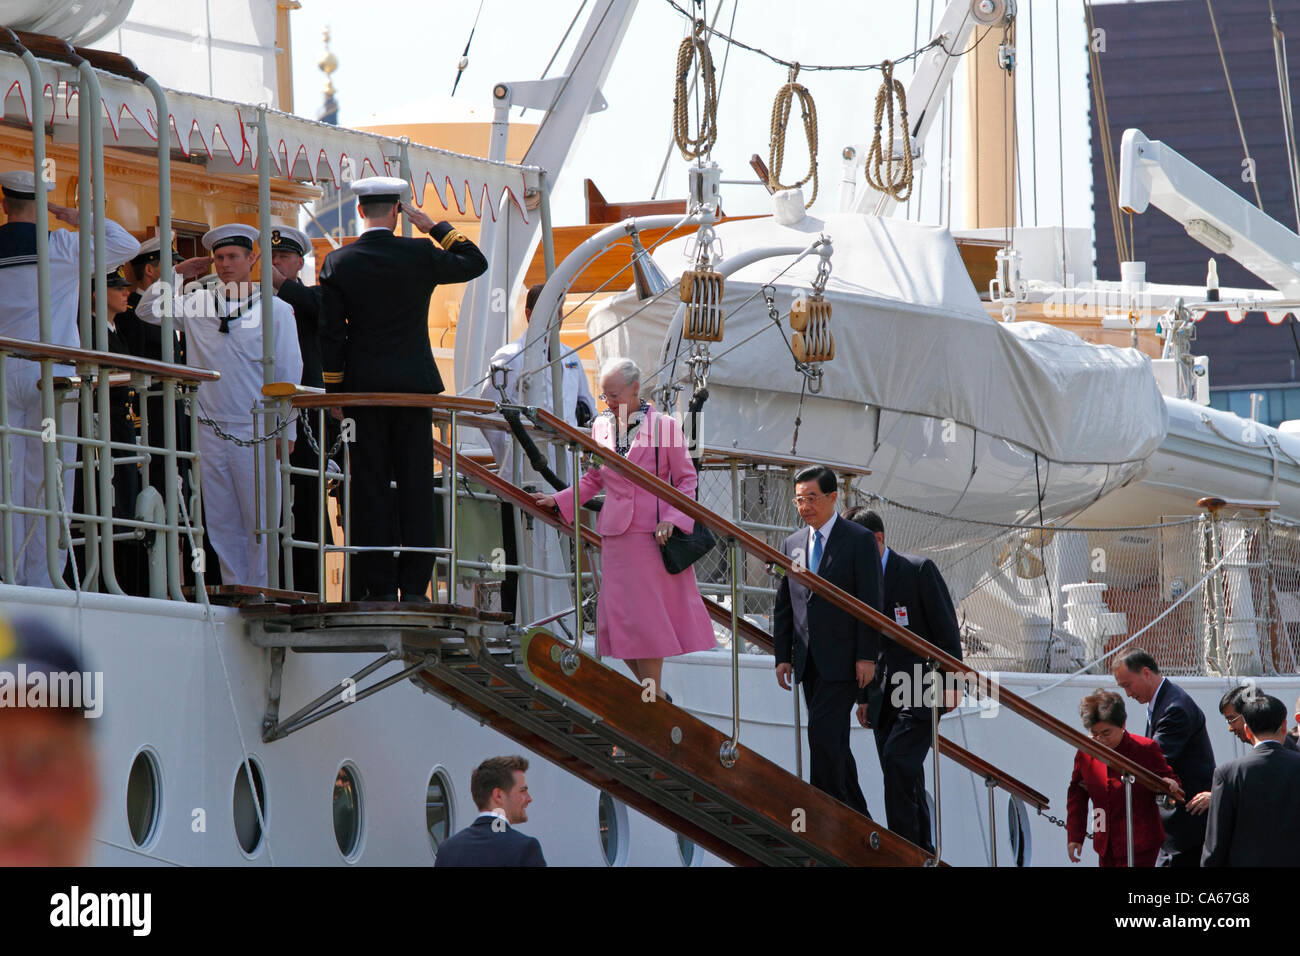 Juni Freitag 15, 2012 - Besuch Königin Margrethe II. von Dänemark und des chinesischen Präsidenten Hu Jintao und seine Frau besteigen die königliche dänische Yacht HDMY Dannebrog am Amaliehaven nahe dem Schloss Amalienborg im Hafen von Kopenhagen für eine kurze geführte Rundfahrt im Hafen auf der offiziellen Dänemark. Stockfoto